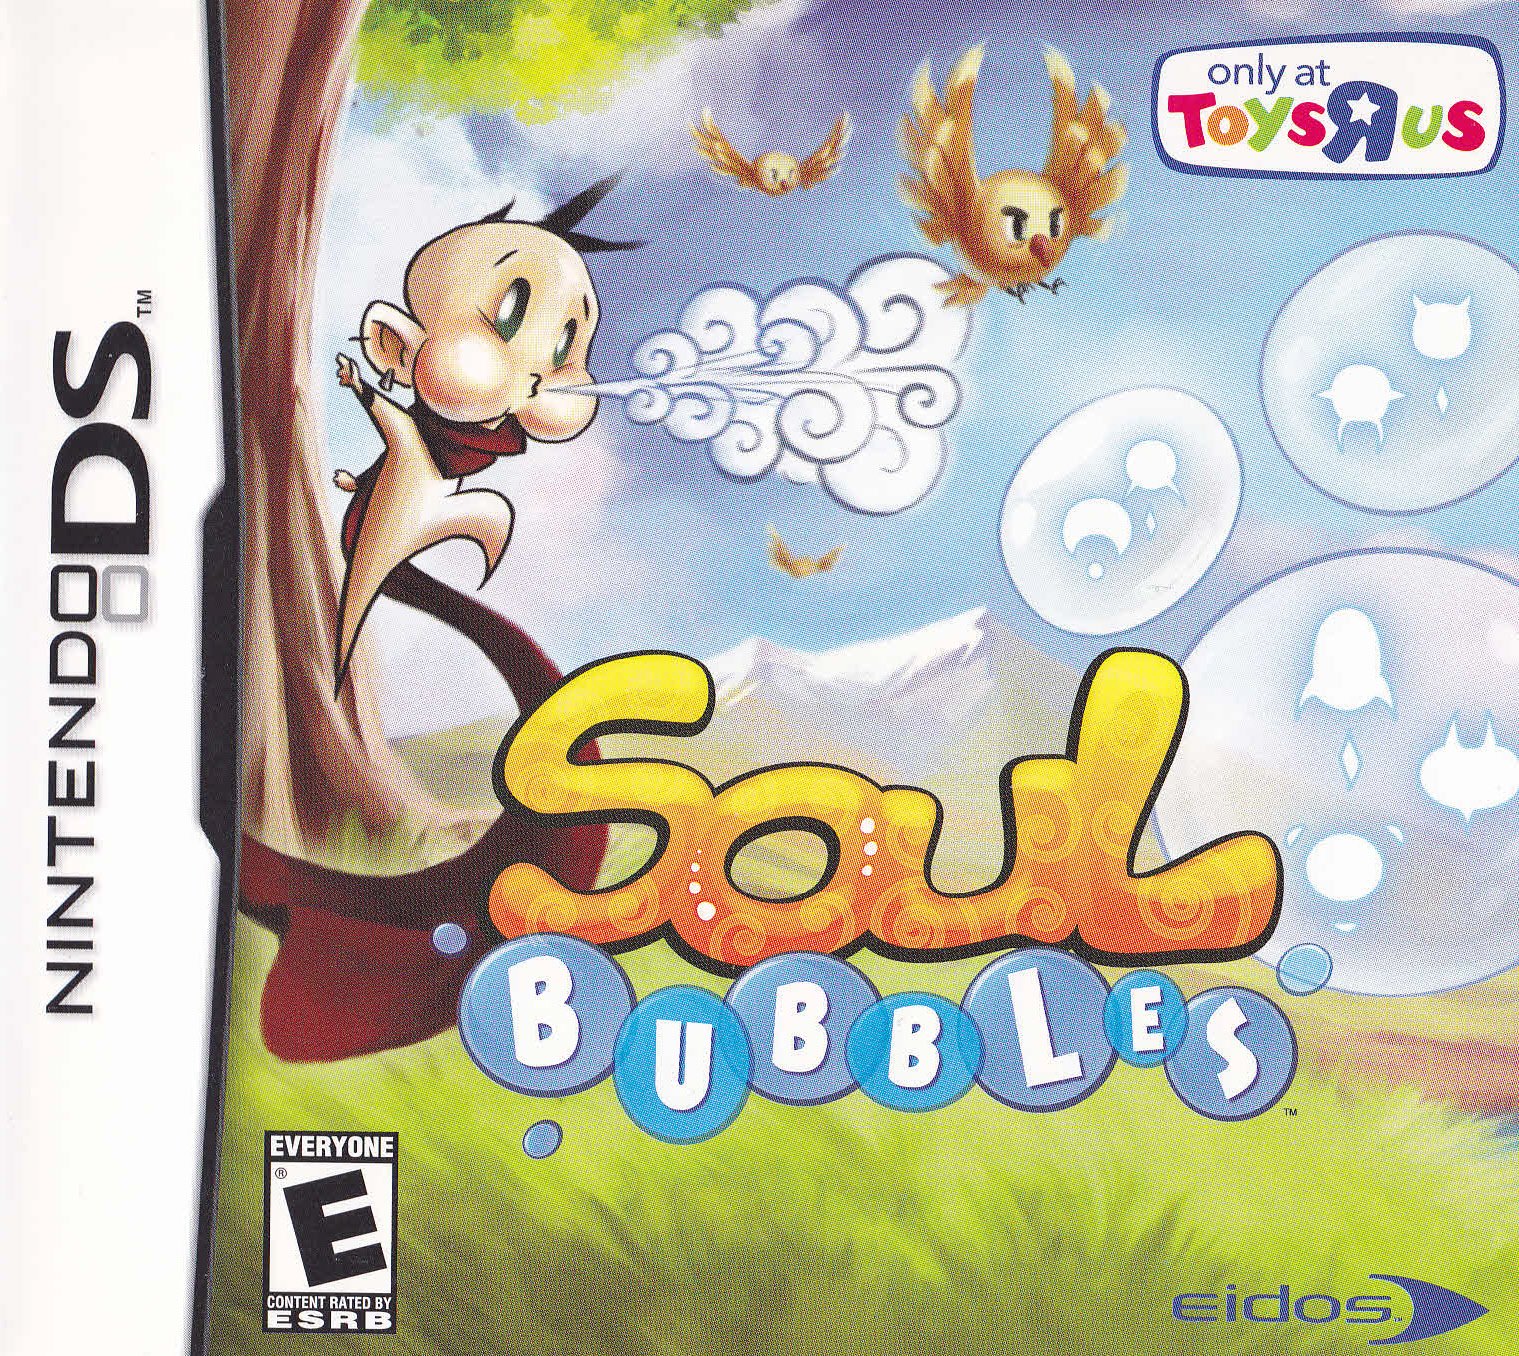 Image of Soul Bubbles